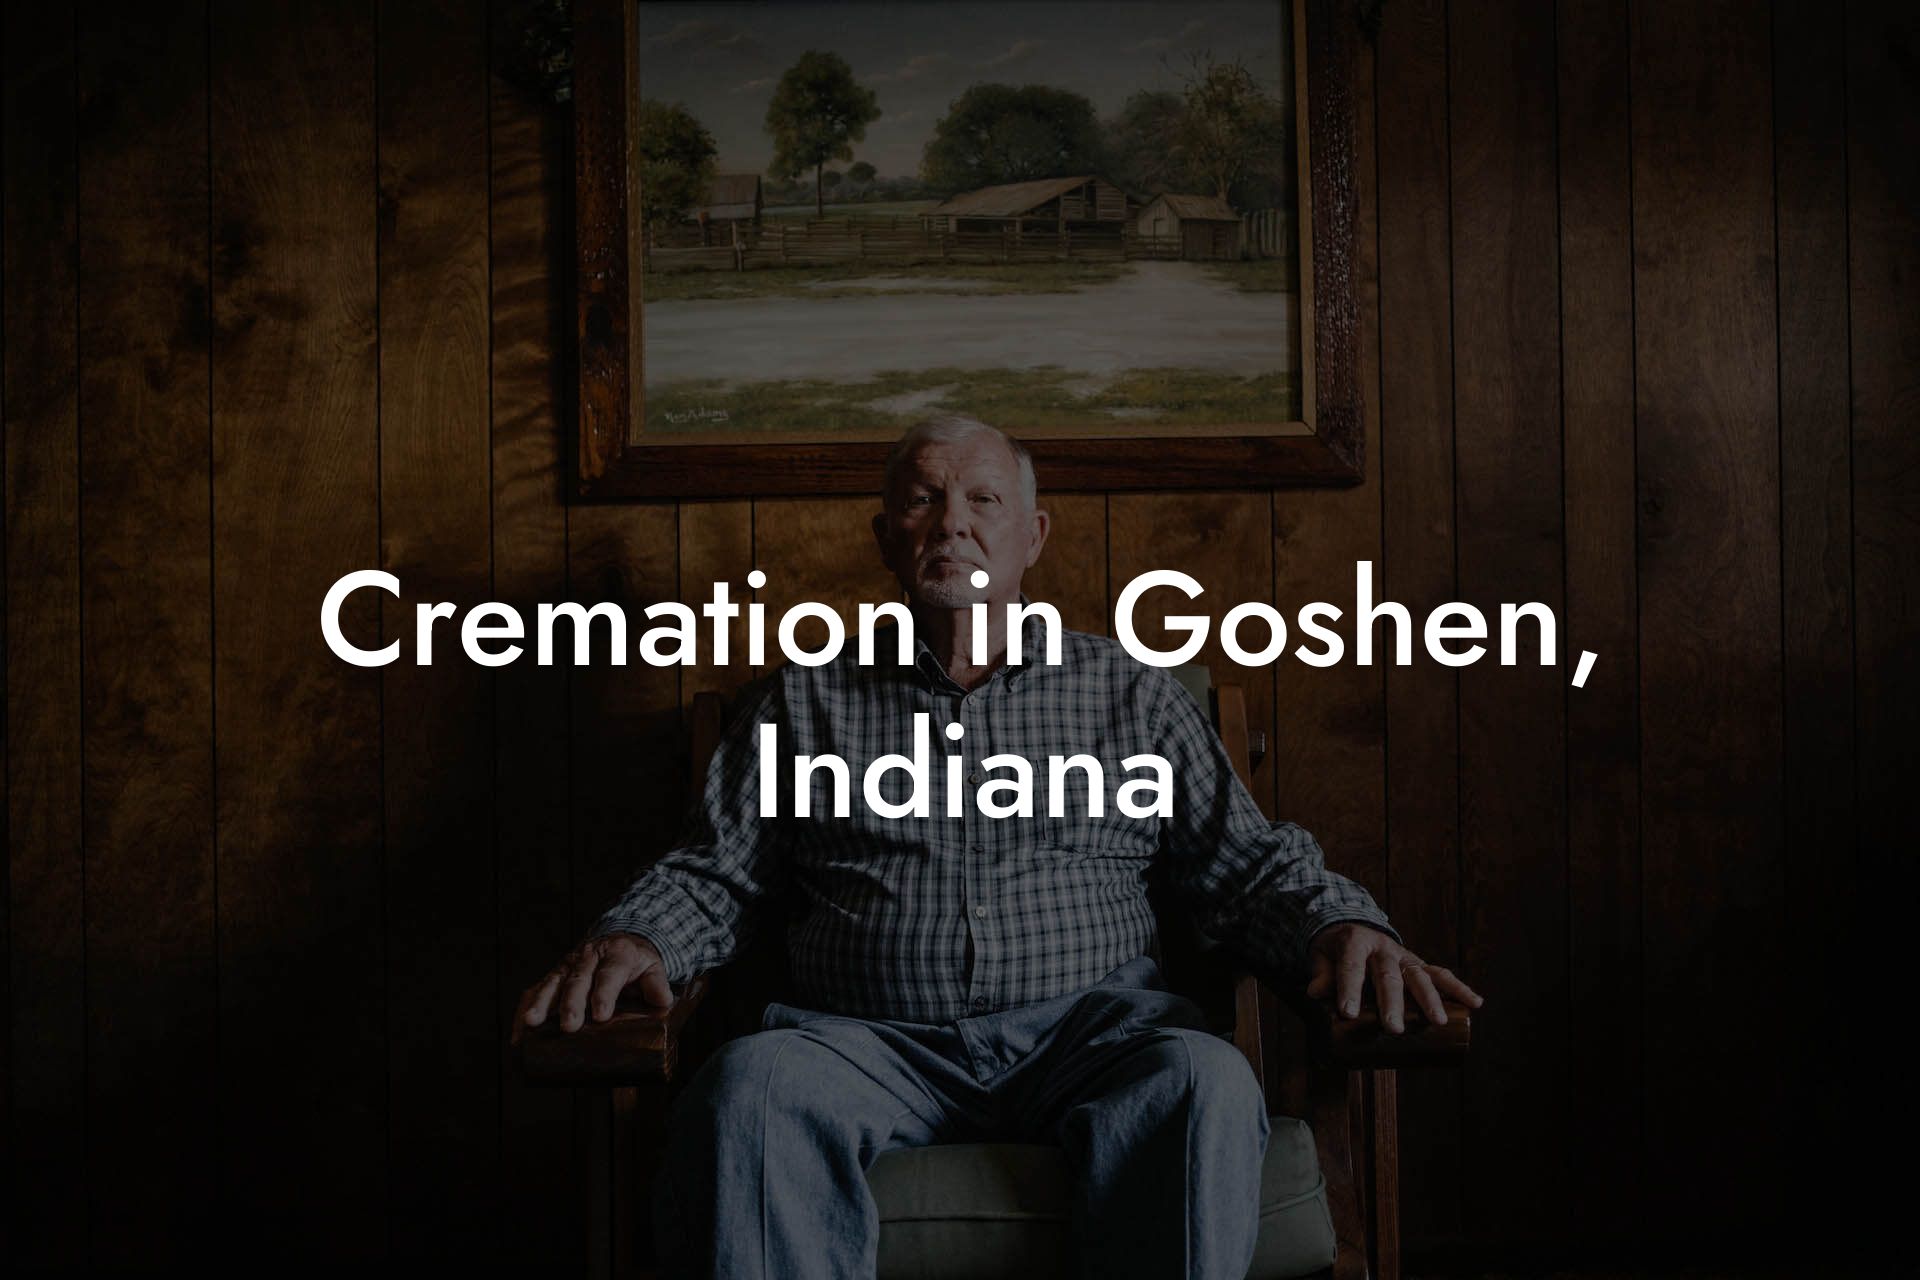 Cremation in Goshen, Indiana